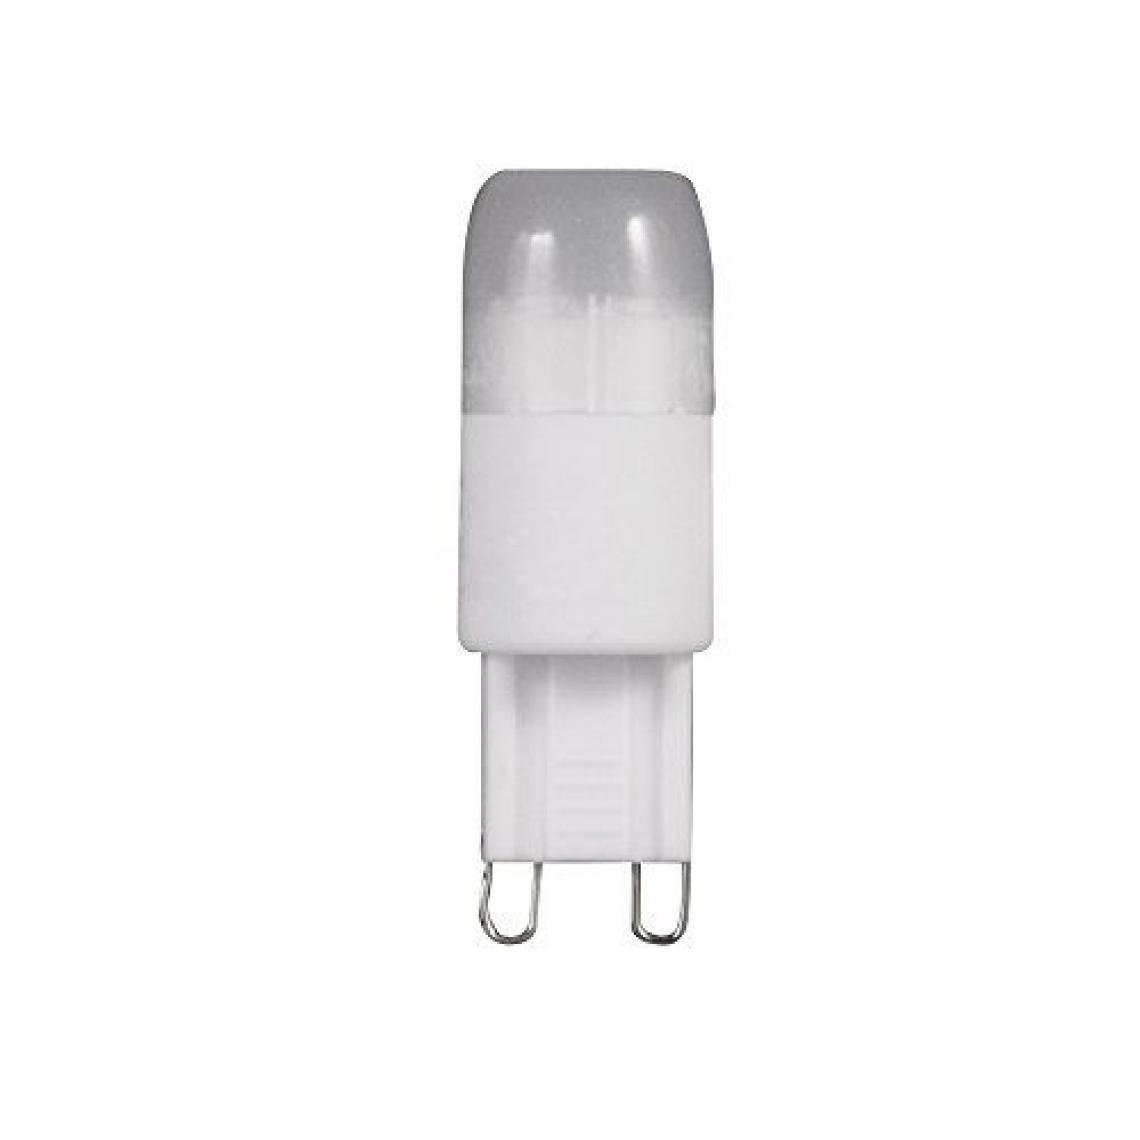 Inconnu - Ampoule LED G9 Müller Licht 24604 à broches 2.0 W = 16 W blanc chaud EEC: classe A+ 1 pc(s) - Ampoules LED